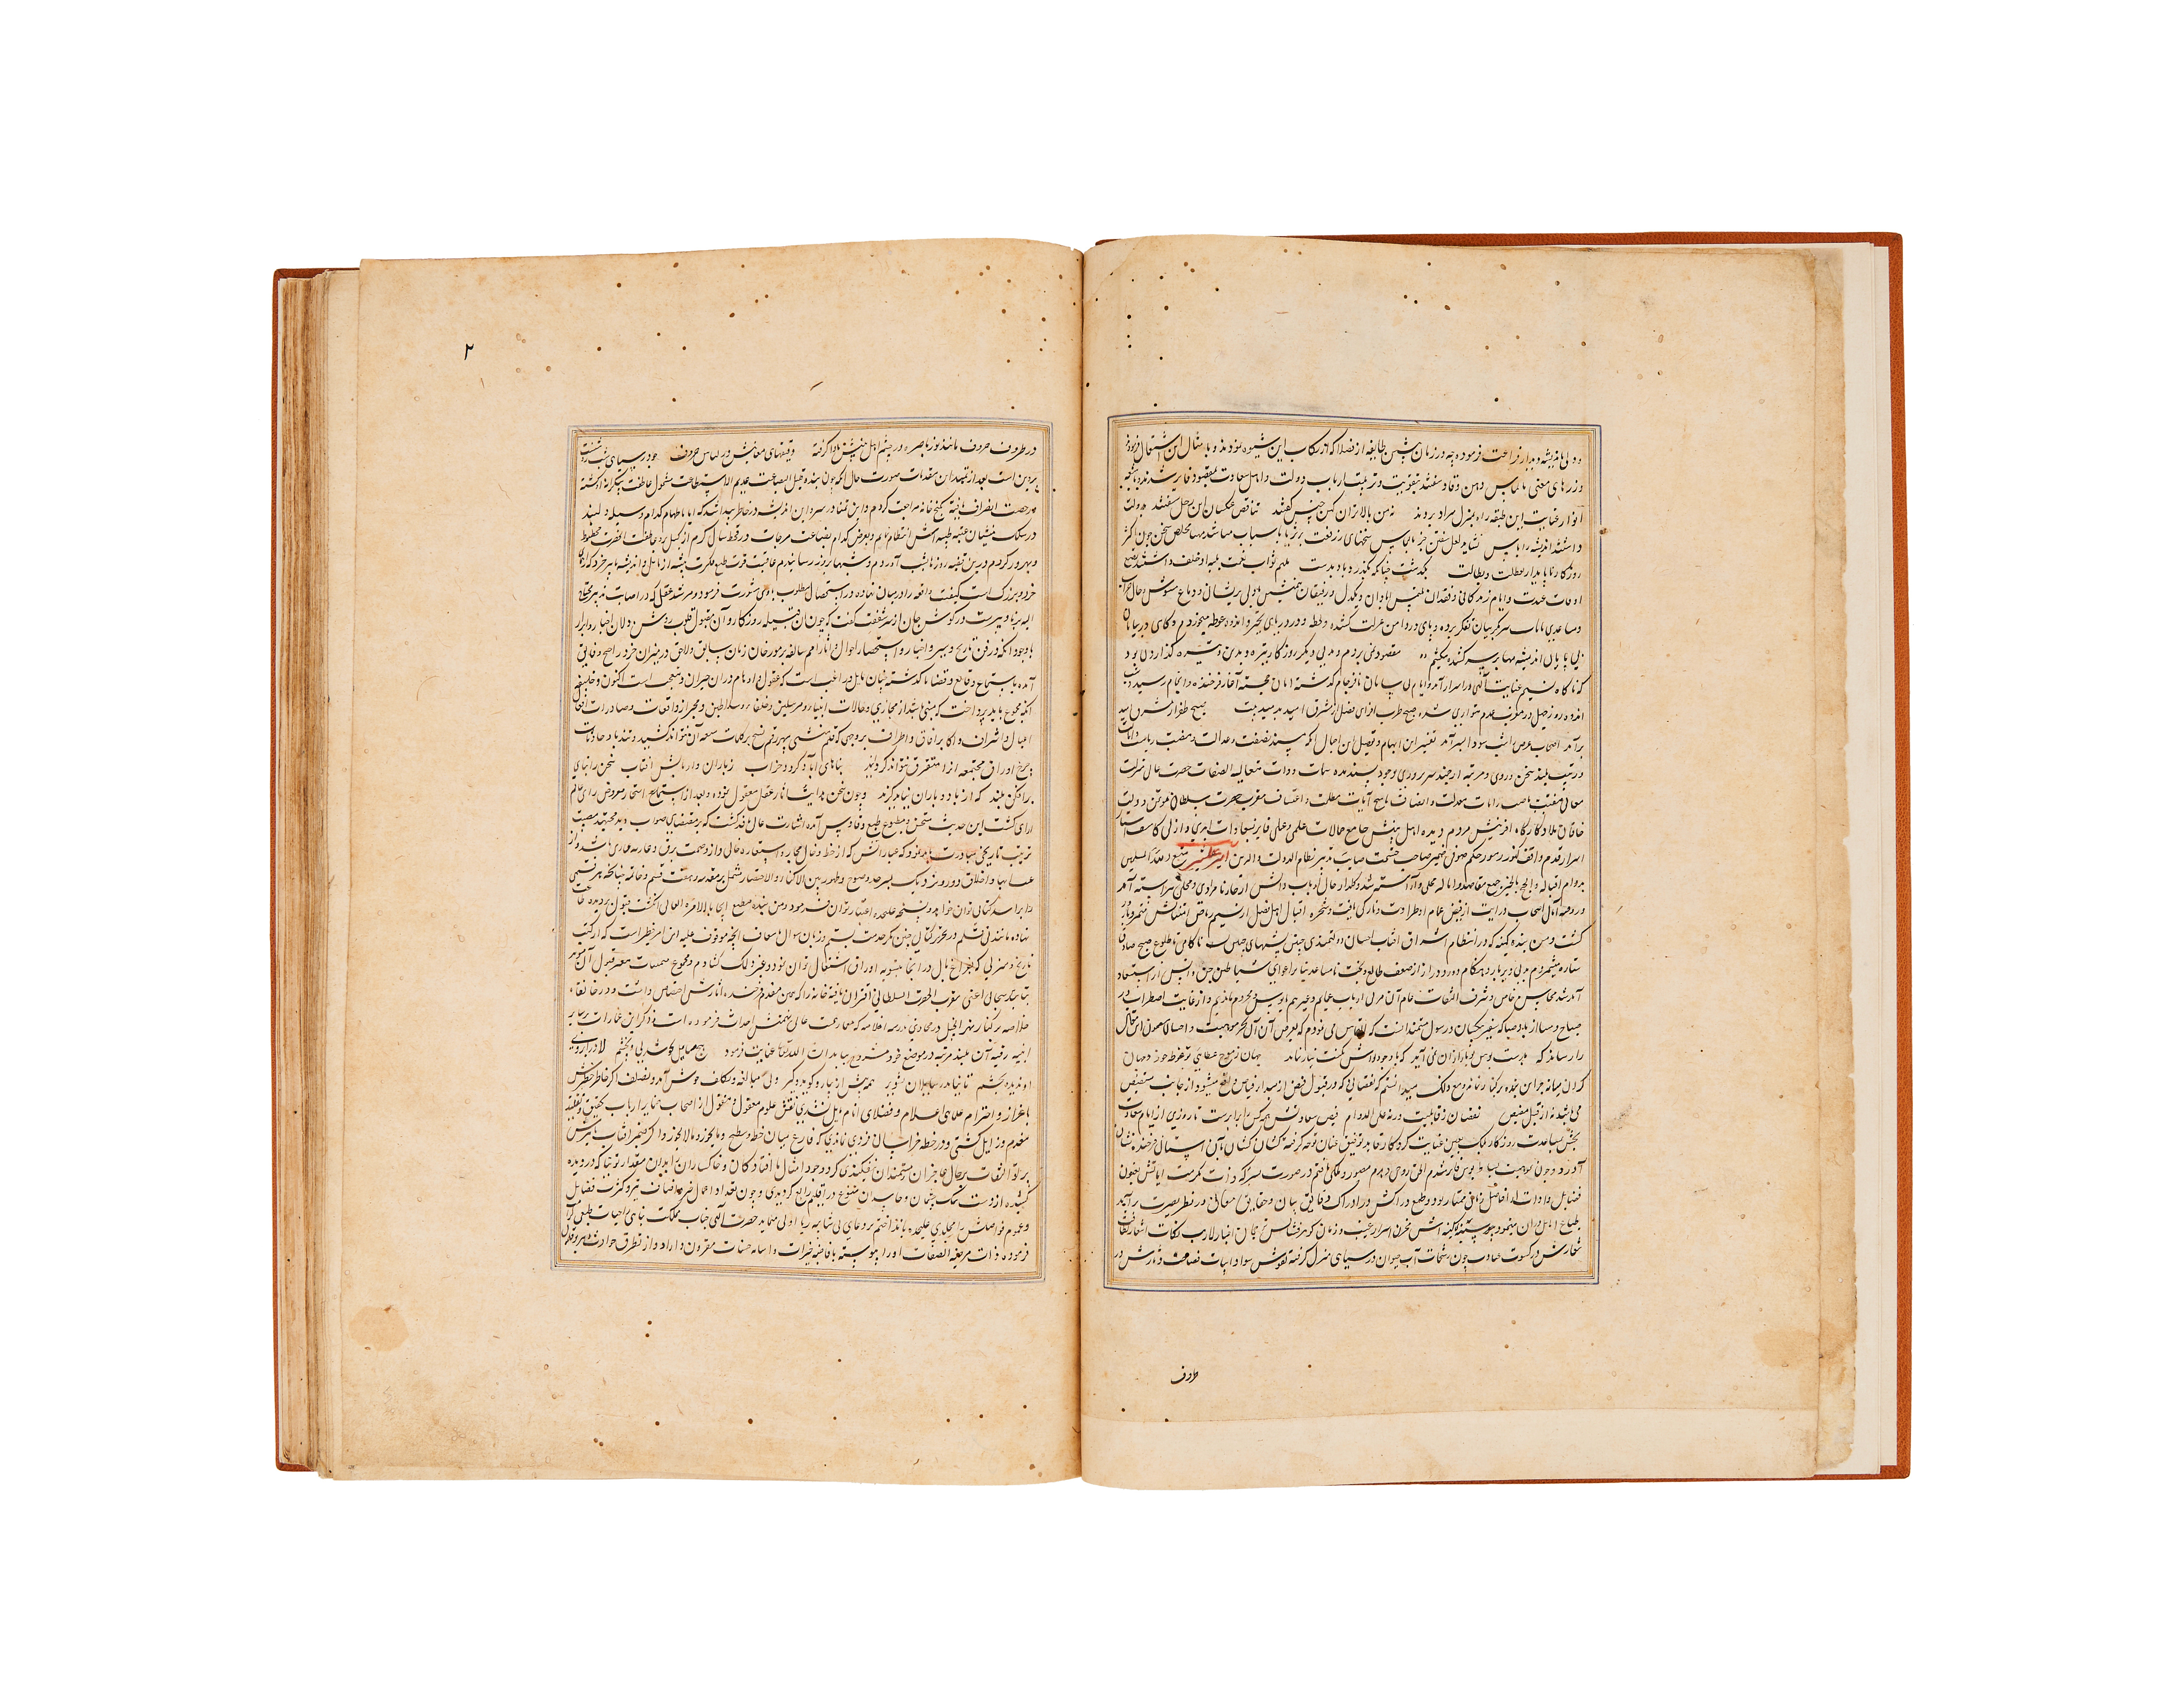 RAWDAT AL-SAFA (TARIH I MIR KHWAND) MUHAMMAD BIN KHAWAND SHAH MIR KHAWAND DATED 1498AD - Image 2 of 9